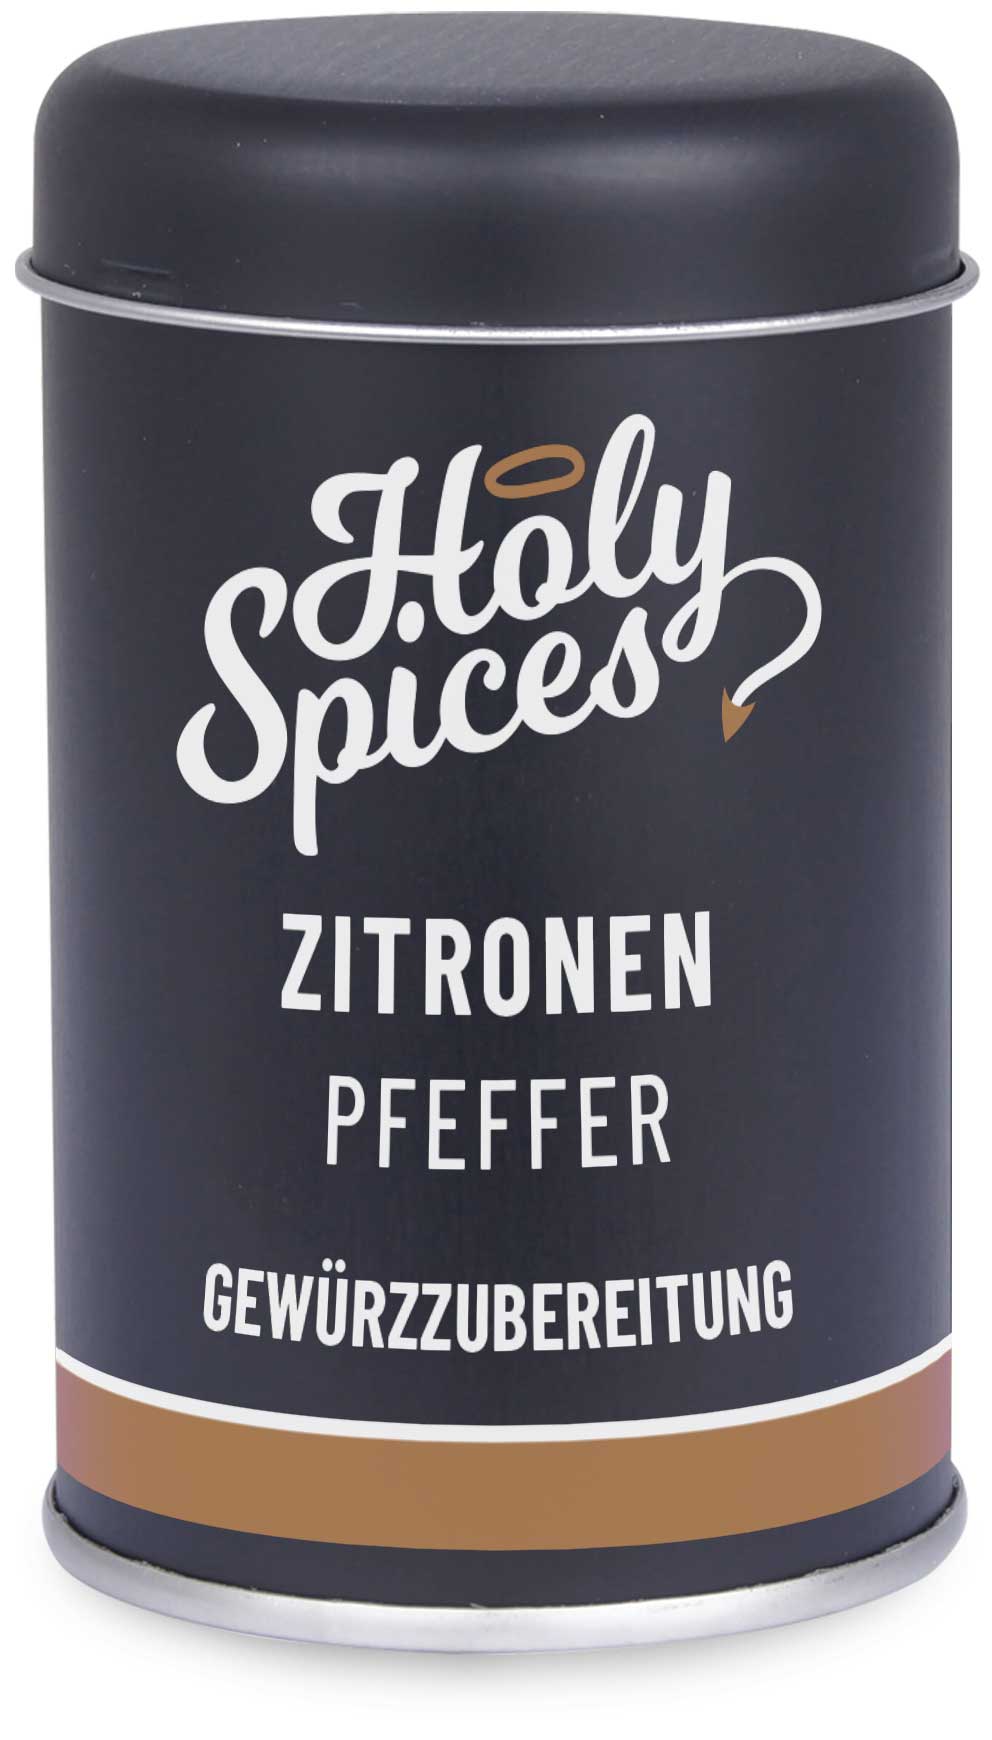 Zitronen Pfeffer in unserem Online Gewürz Shop Holy Spices bestellen ...